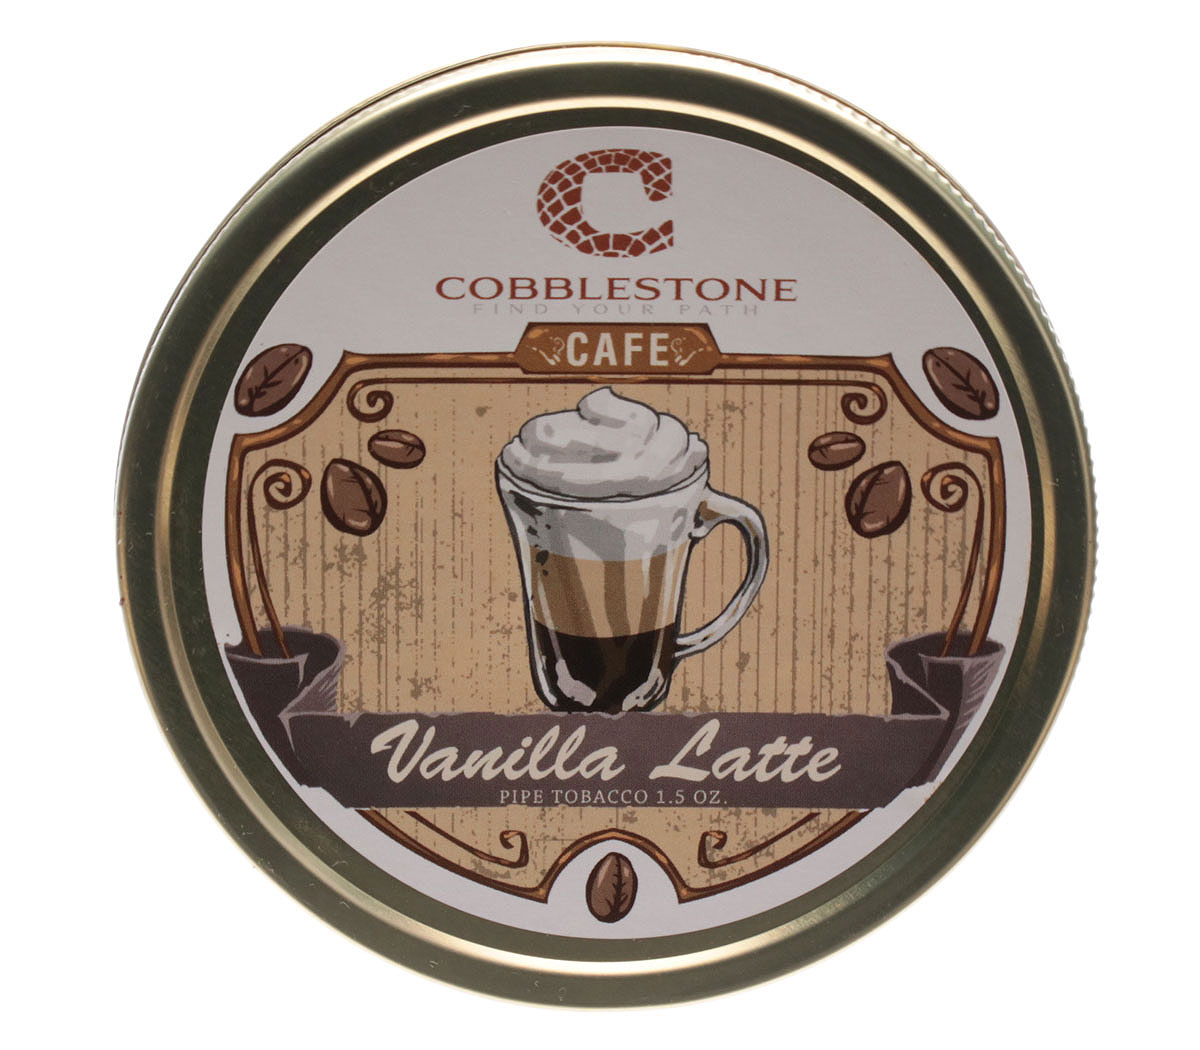 Cobblestone Cafe Vanilla Latte 1.5oz